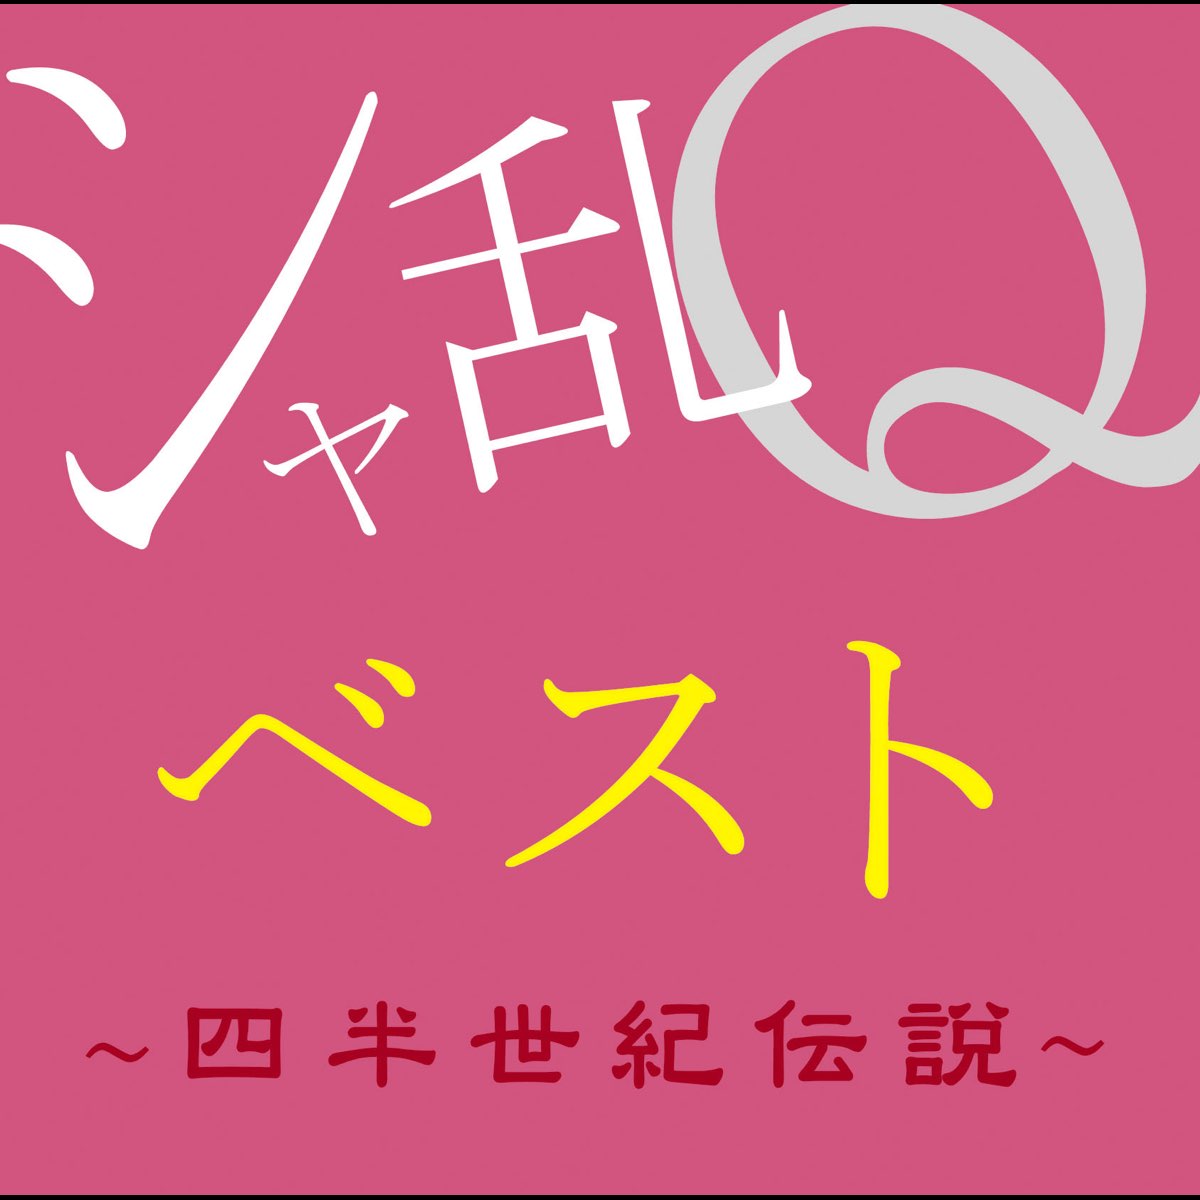 シャ乱Qベスト 〜四半世紀伝説〜 - シャ乱Qのアルバム - Apple Music